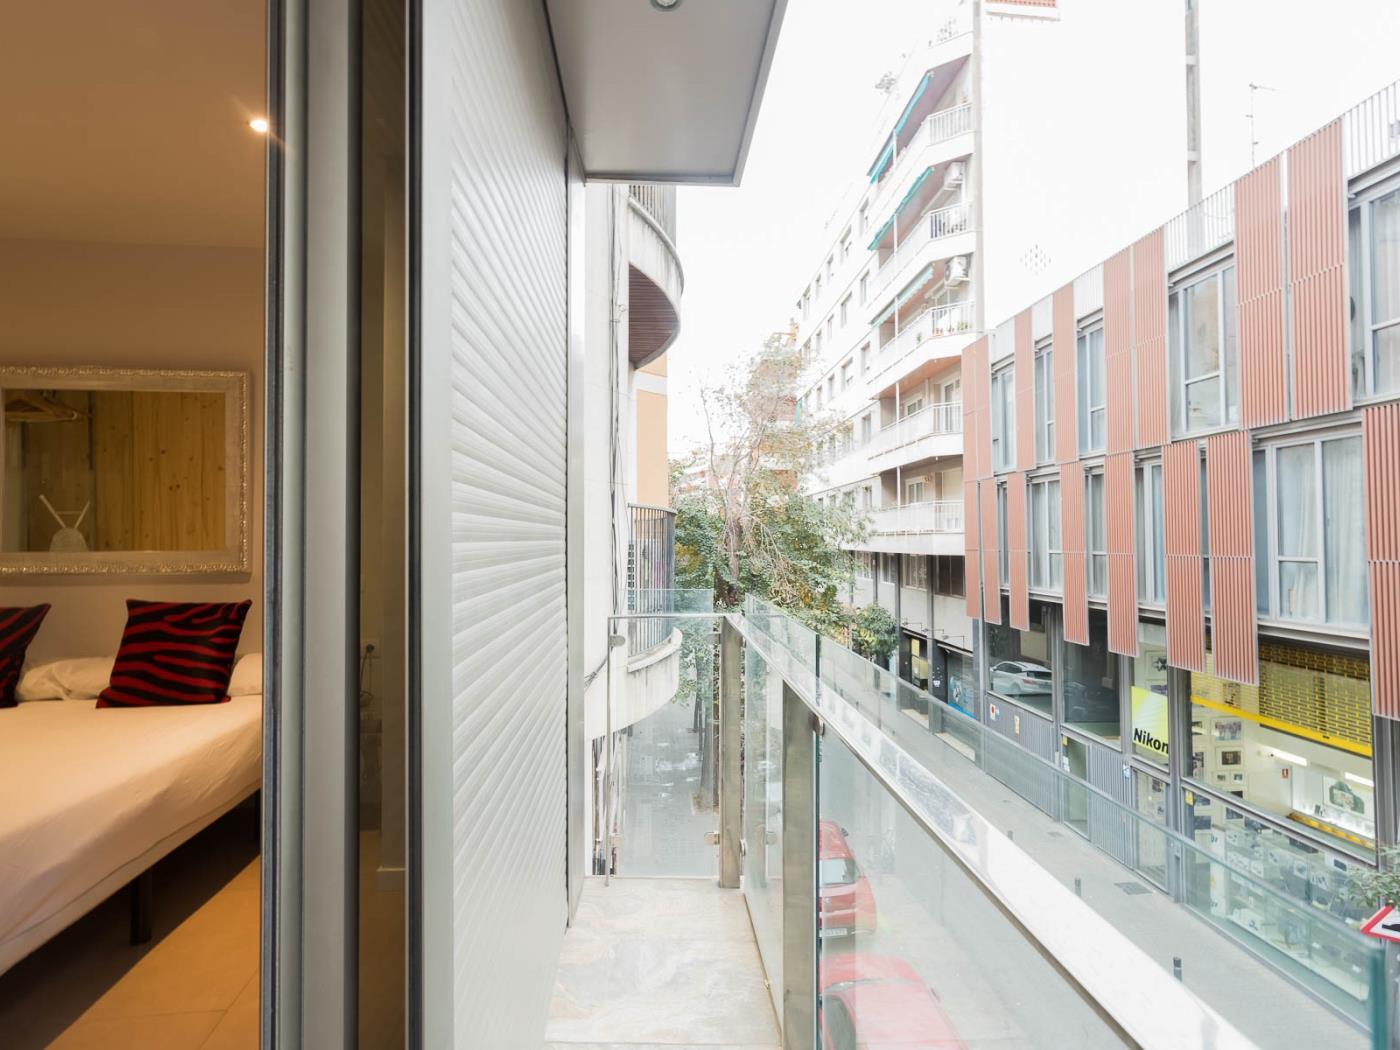 Grazioso appartamento a Sant Gervasi in affitto mensile - My Space Barcelona Appartamenti